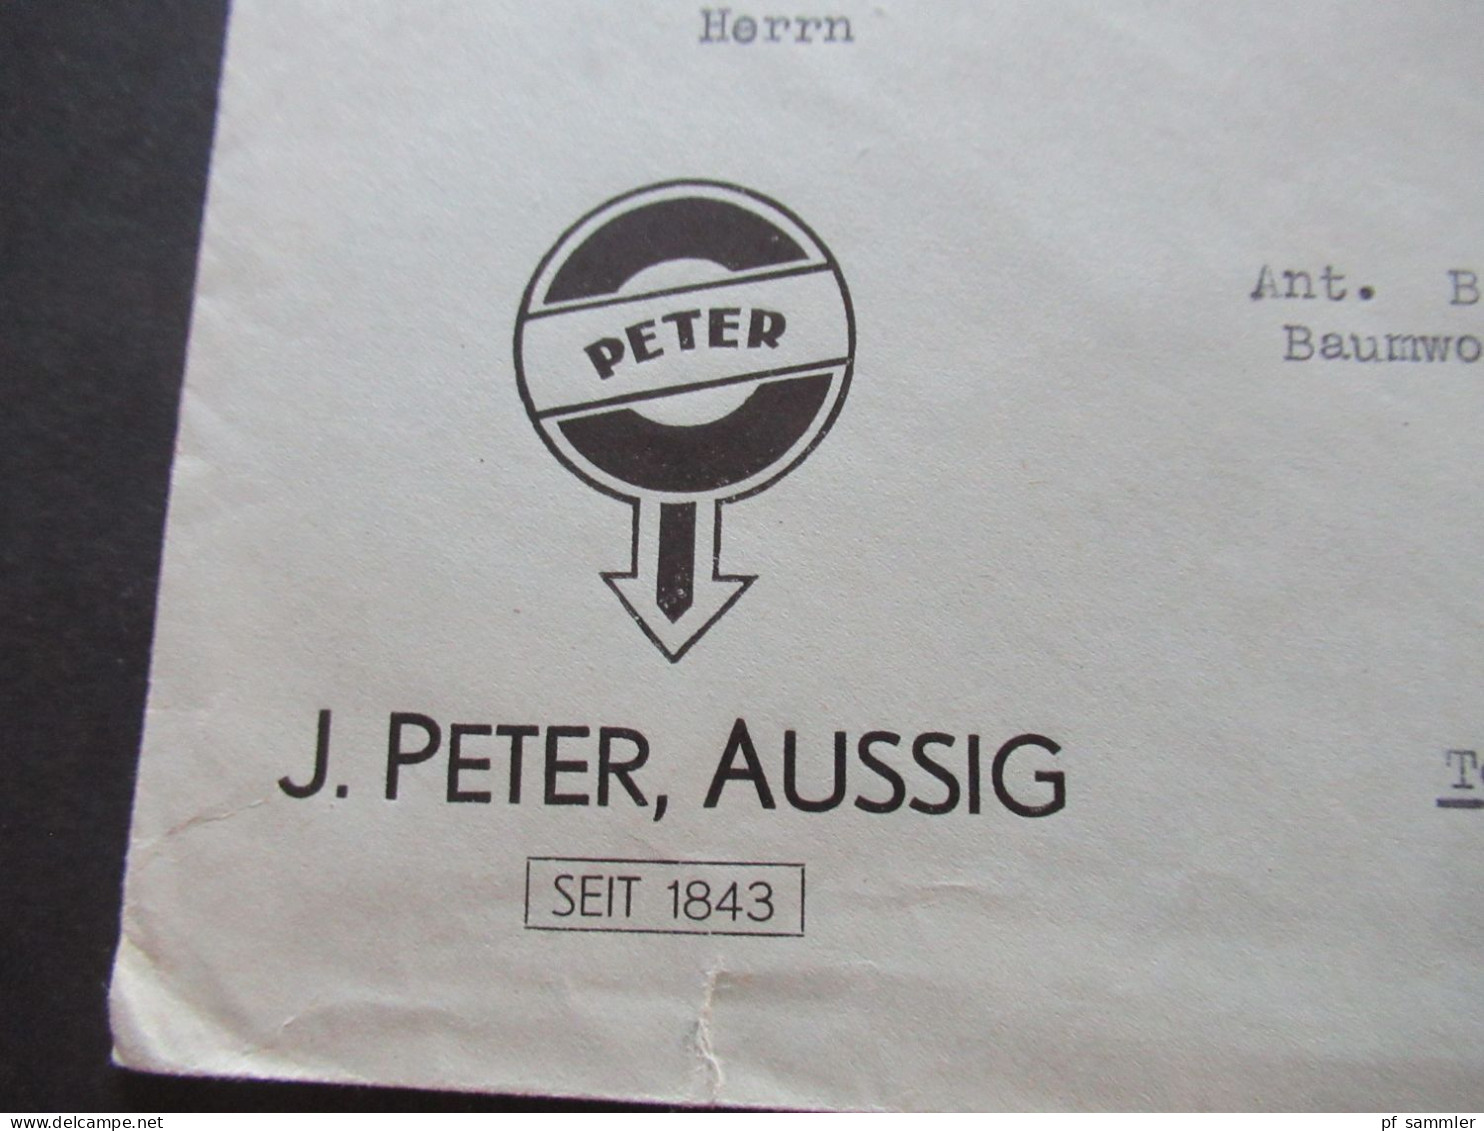 3.Reich Sudetenland 29.10.1938 Violetter Stempel Aussig Umschlag J.Peter Aussig Seit 1843 - Teplitz Schönau - Sudetes